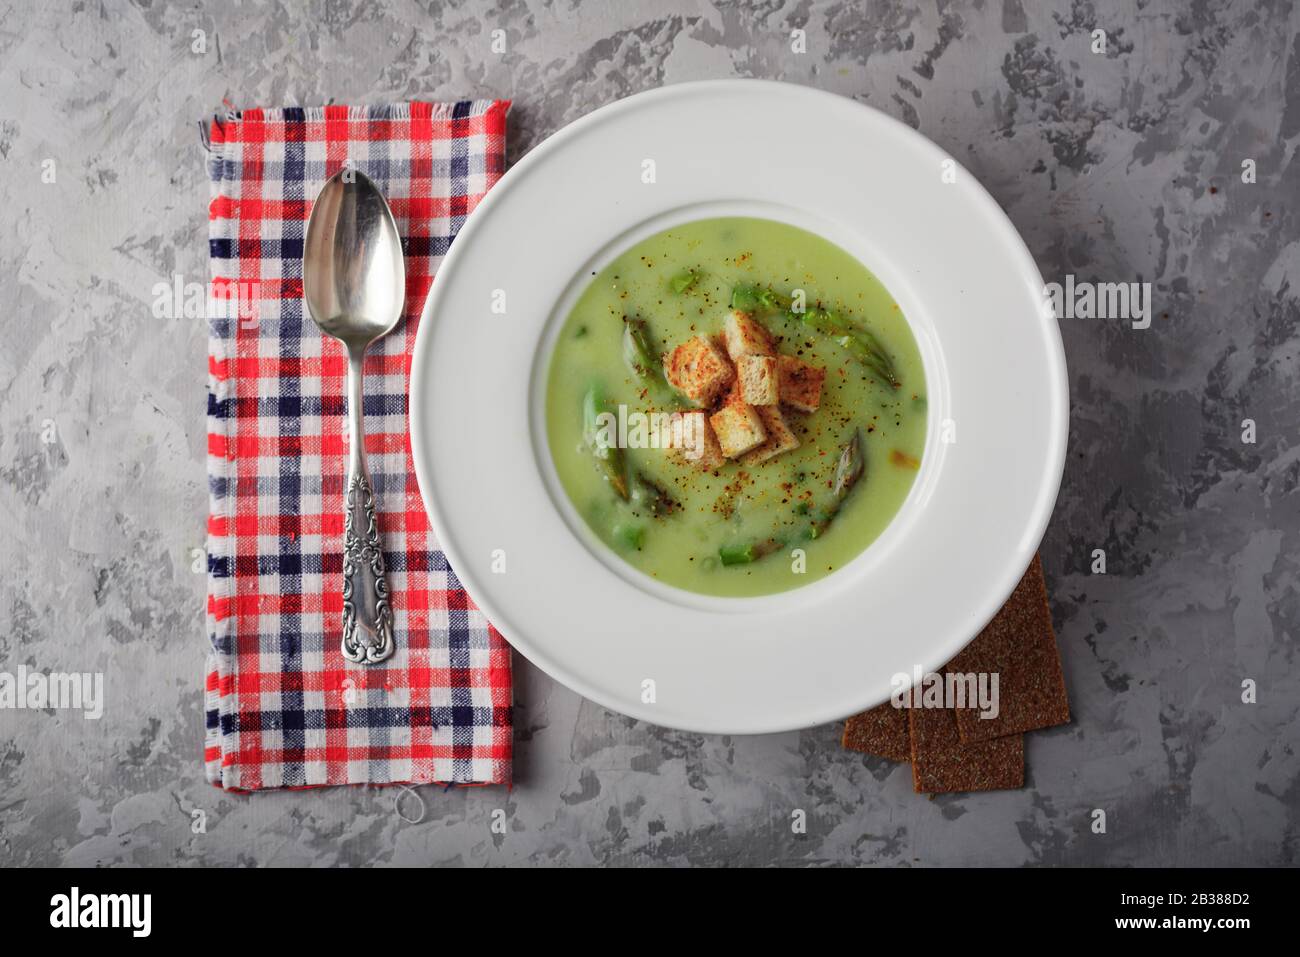 Verde zuppa di asparagi con i cracker in bianco ciotola closeup. Fotografia di cibo Foto Stock